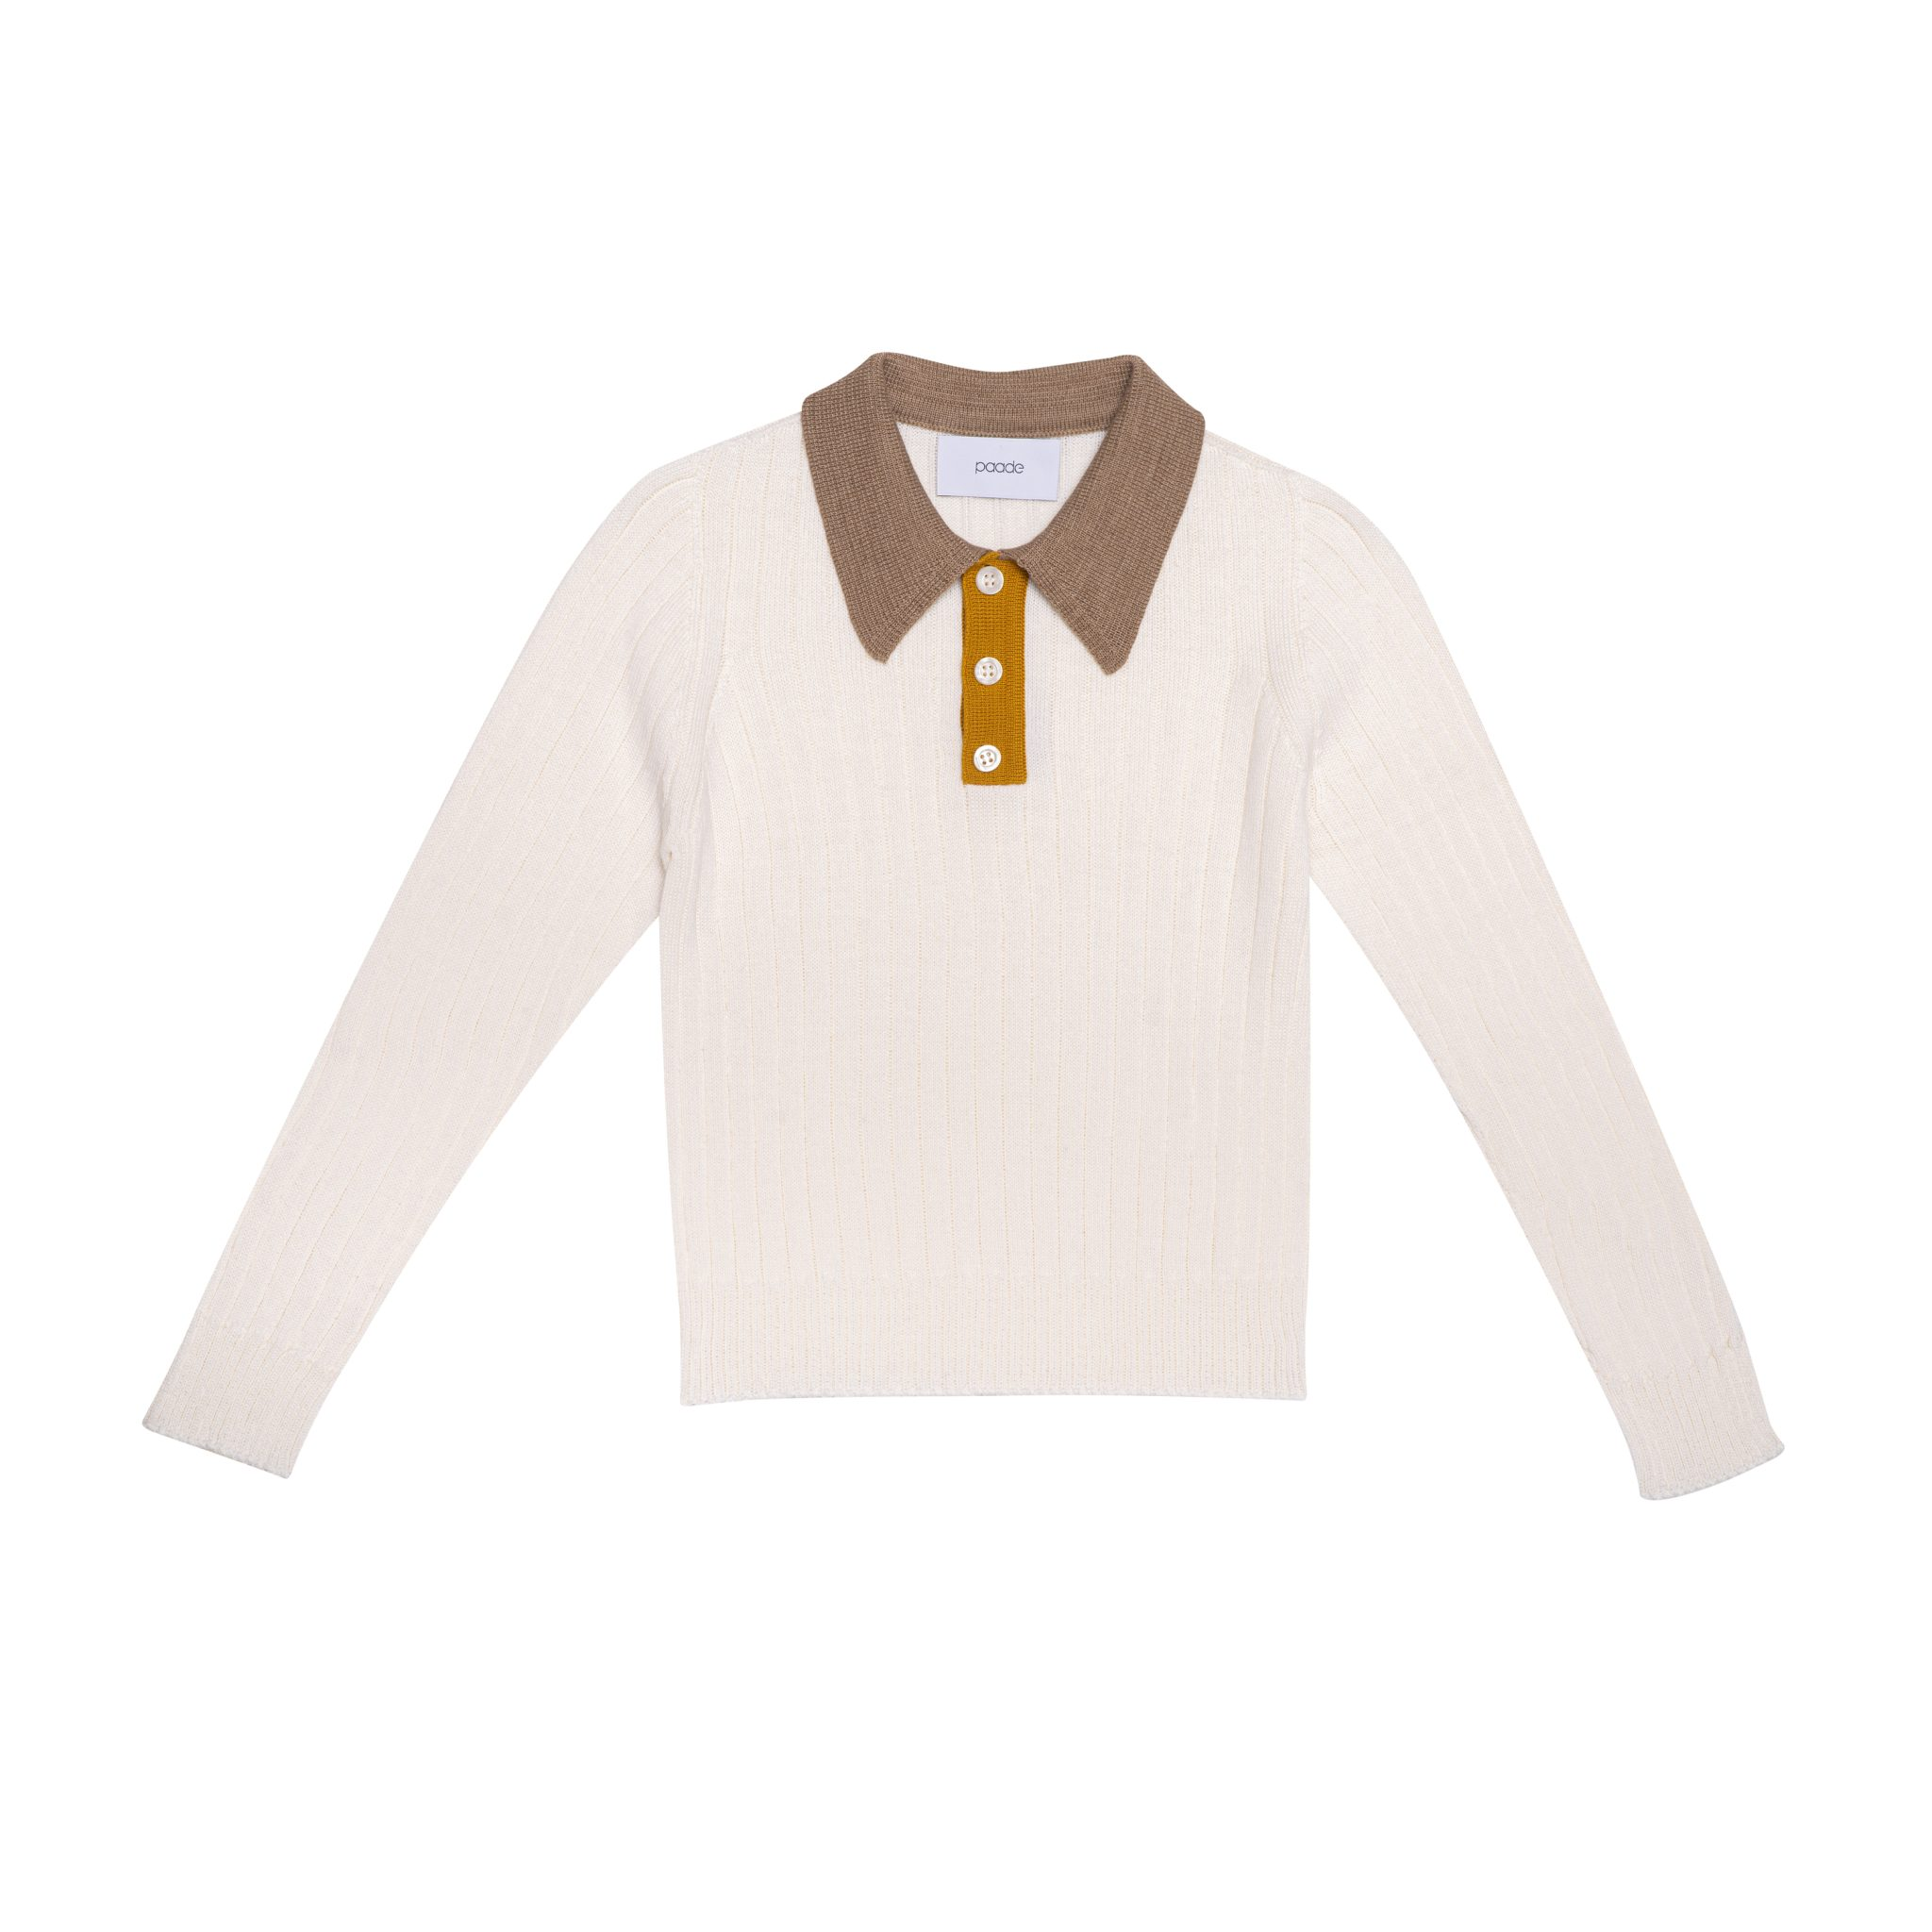 Wool Seamless Knit Poloshirt White